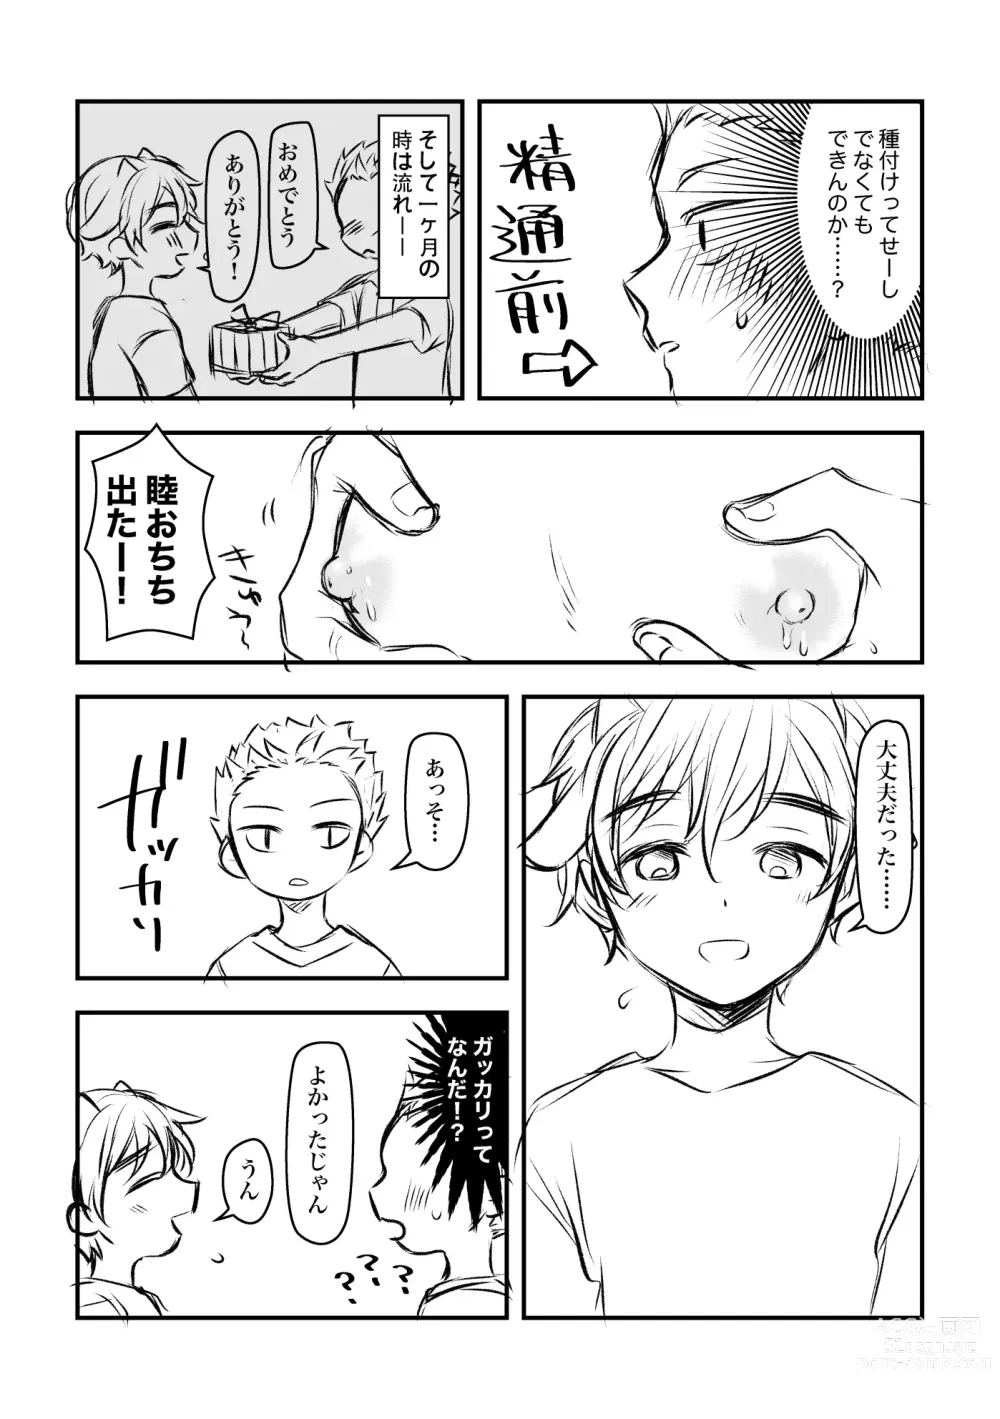 Page 3 of doujinshi Youtarou to Mutsumi